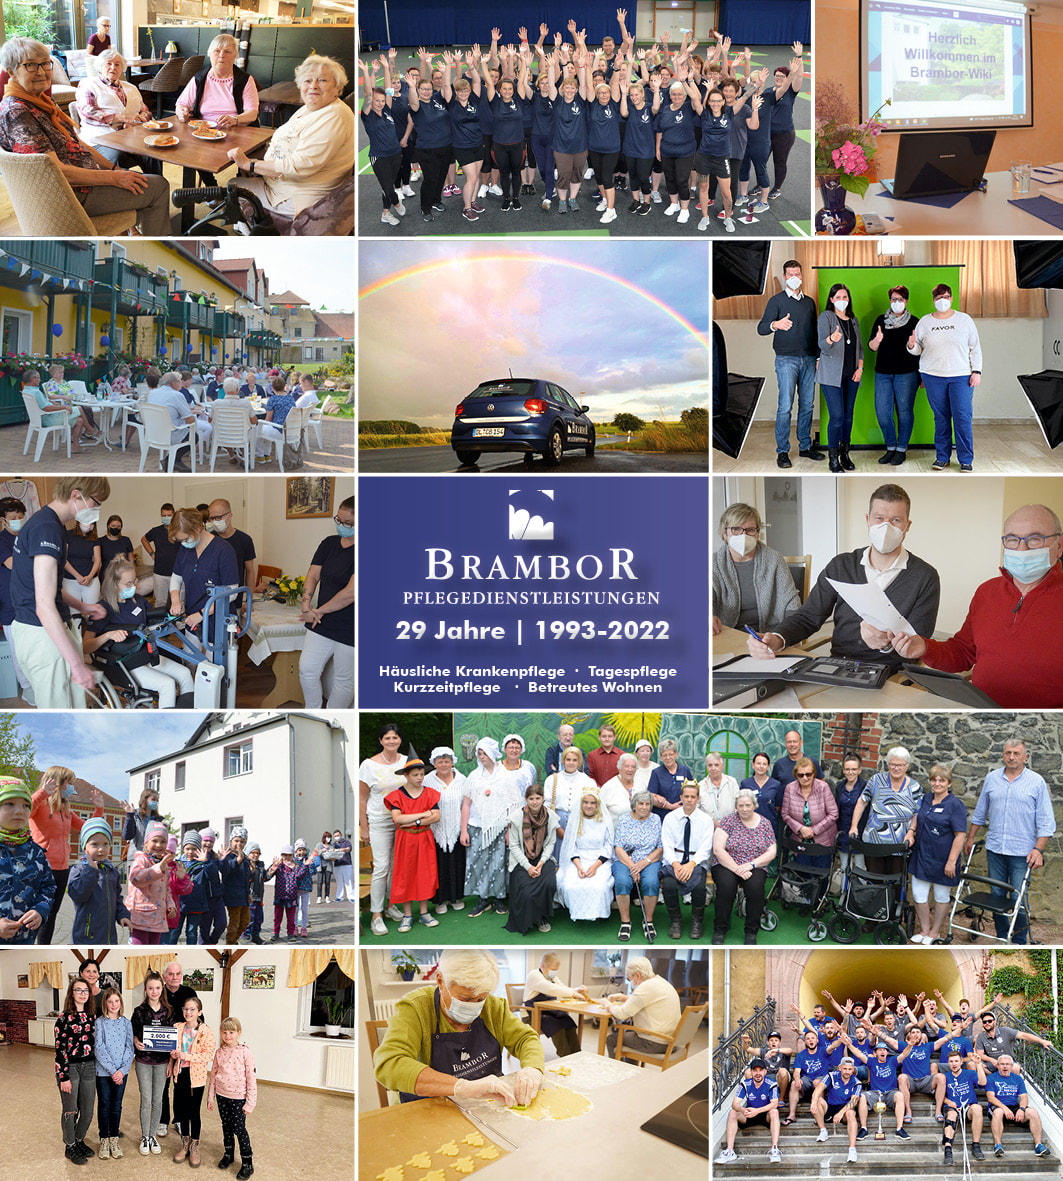 Brambor pflegedienst 2021 rueckblick mitarbeiter team kienten senioren